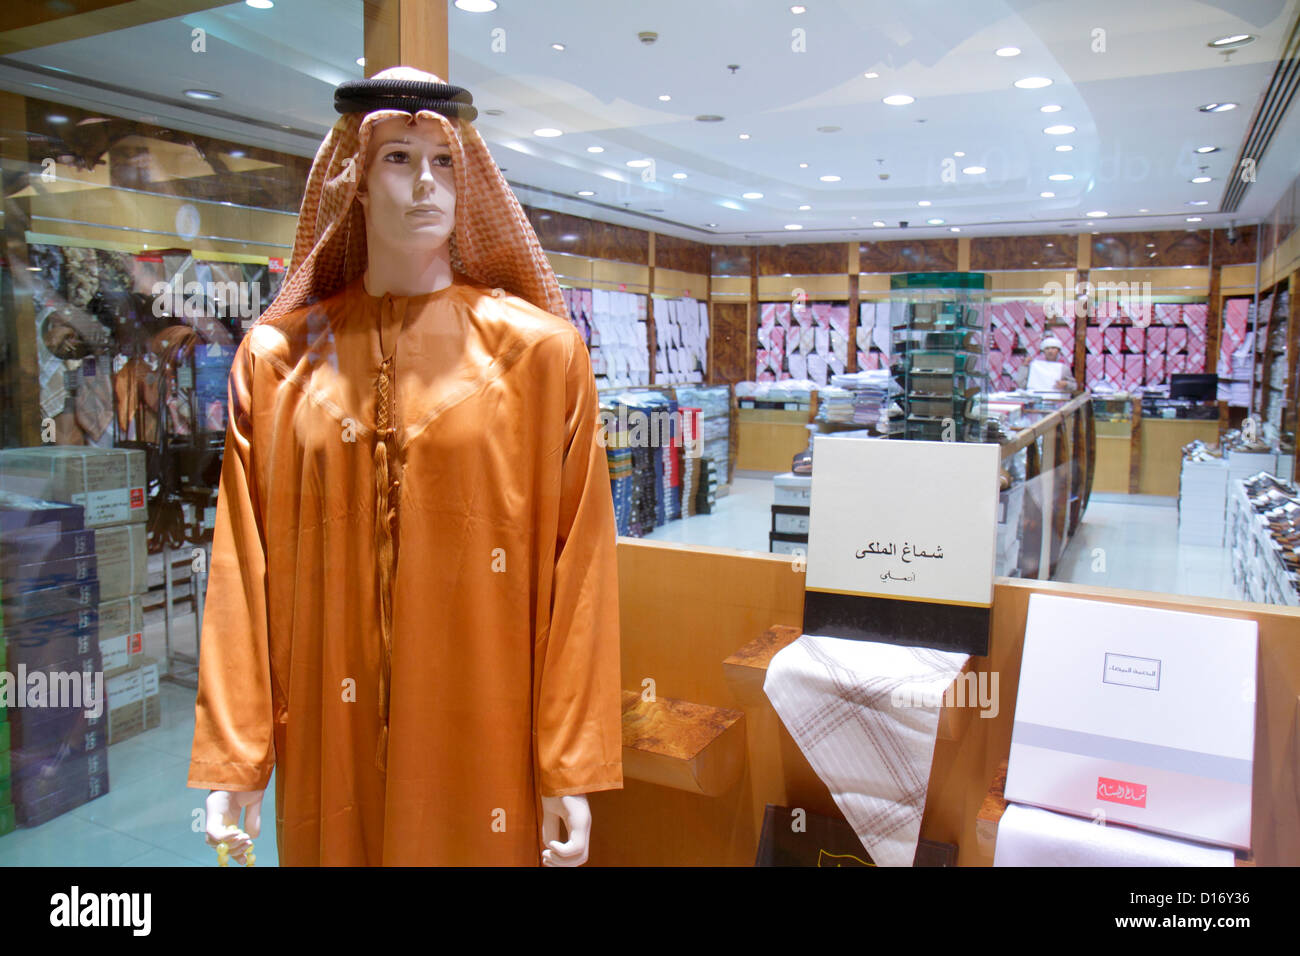 Dubai VAE, Vereinigte Arabische Emirate, Deira, Al Rigga, Al Ghurair Centre, Shopping Shopper Shopper shoppen shoppen shoppen shoppen Märkte kaufen verkaufen, Einzelhandelsgeschäfte Stockfoto